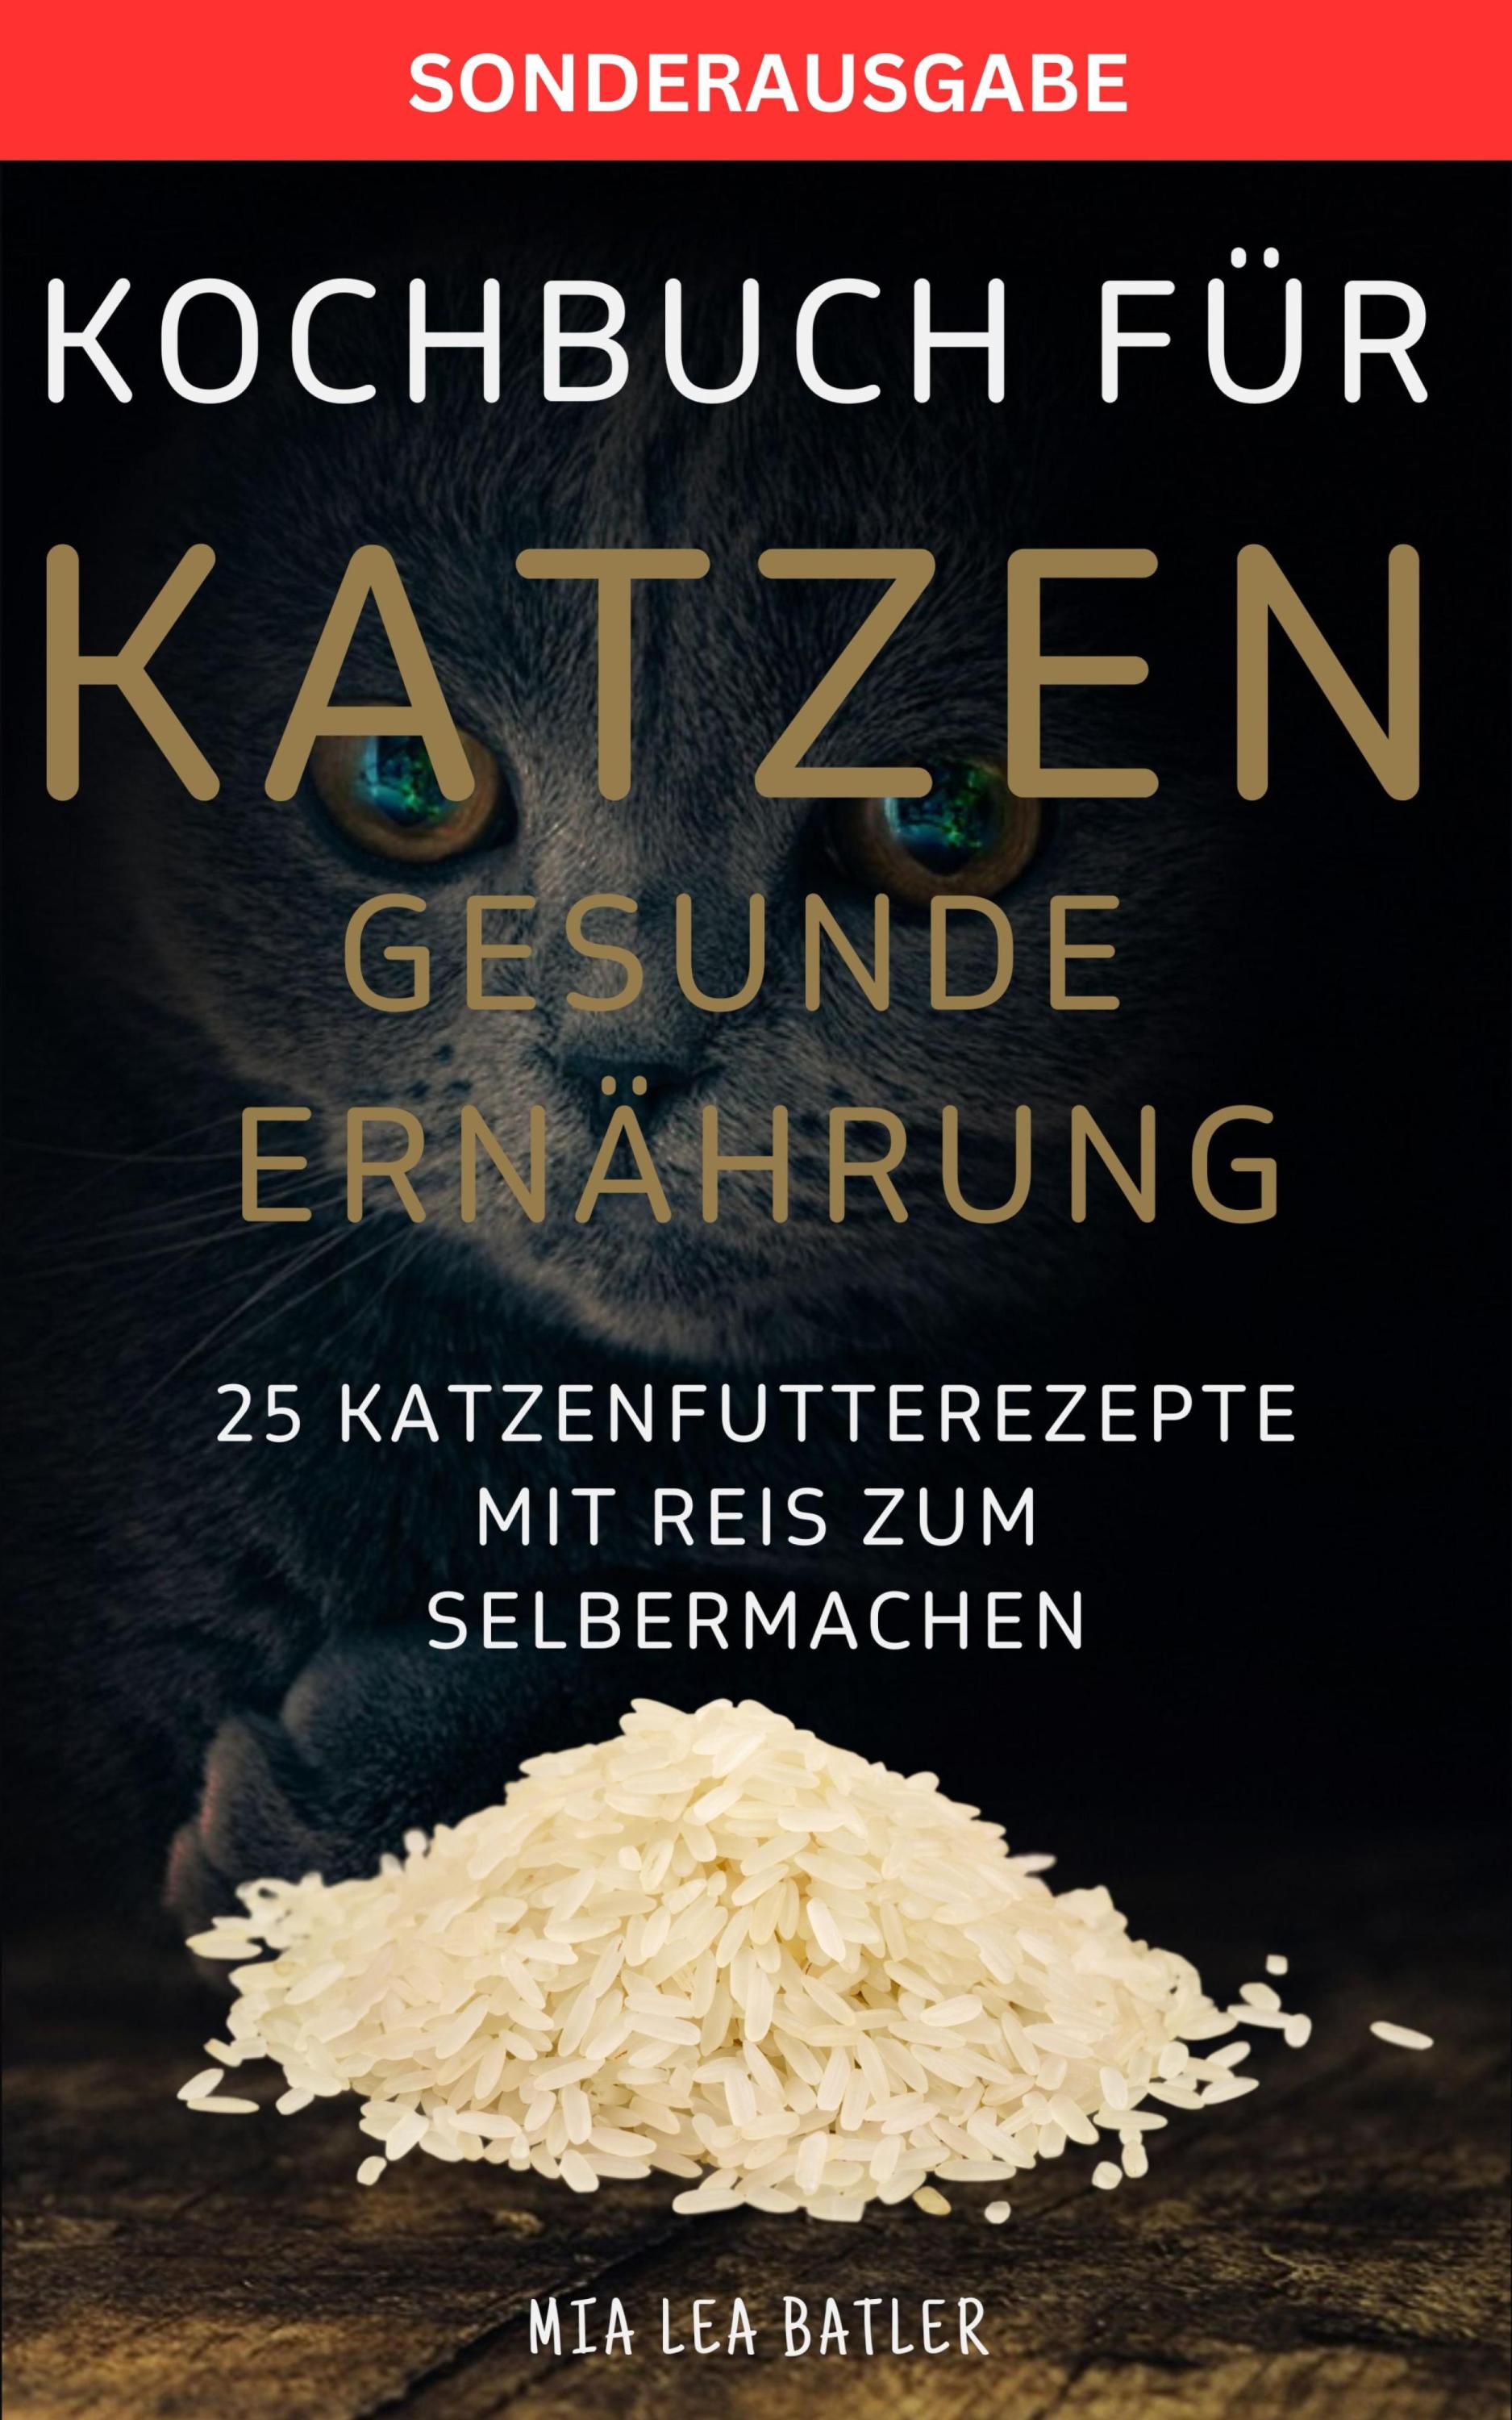 KOCHBUCH FÜR KATZEN GESUNDE ERNÄHRUNG -25 Katzenfutterrezepte mit Reis zum Selbermachen